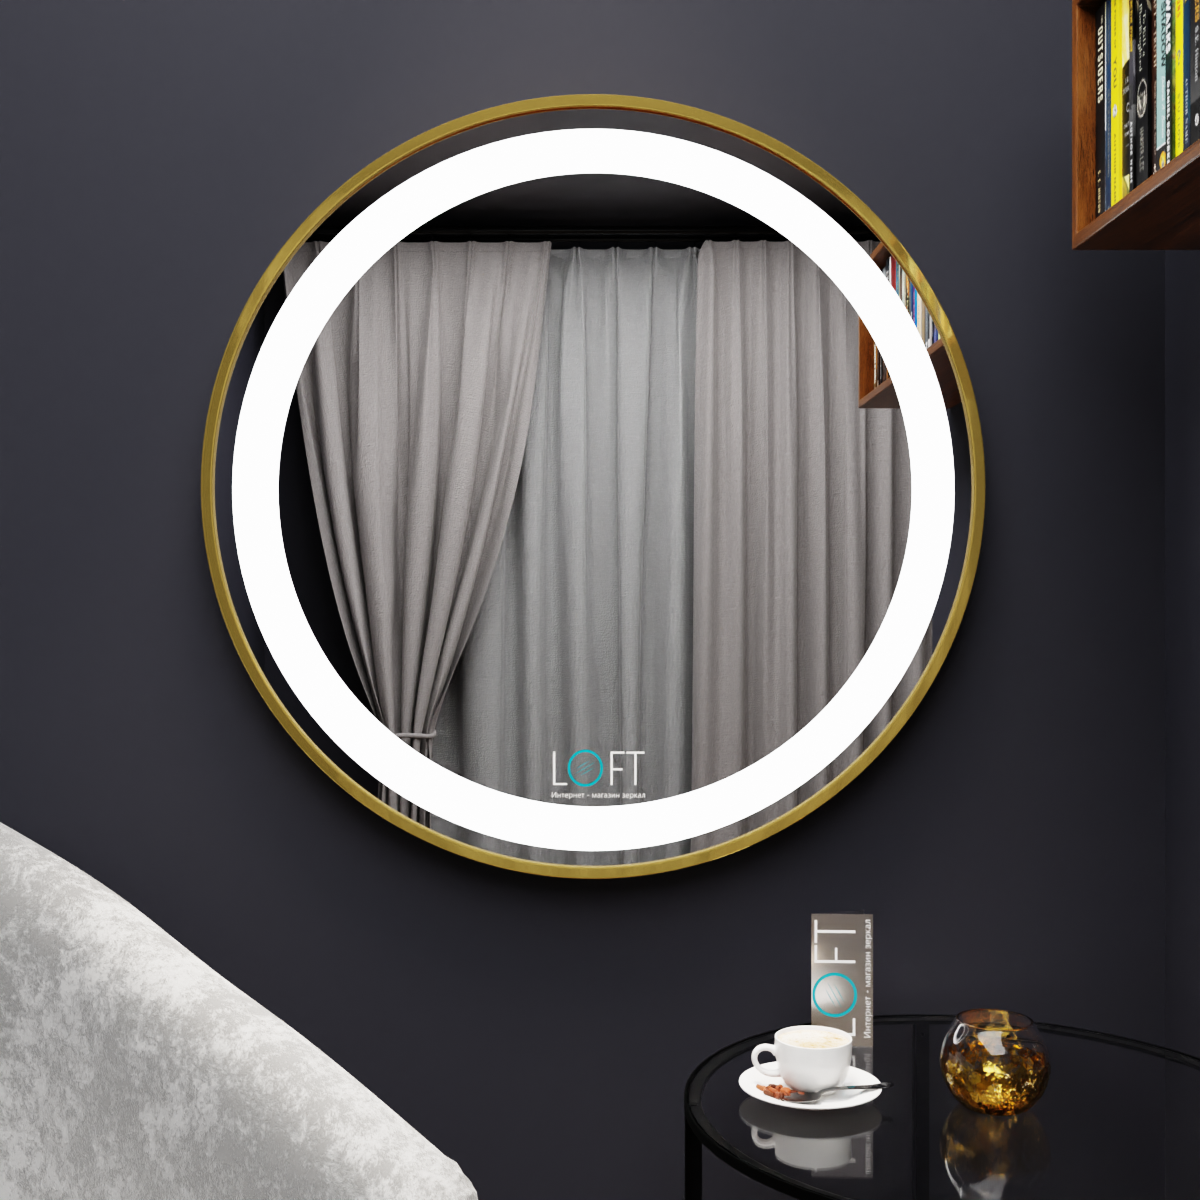 Настенное круглое зеркало с LED-подсветкой, лицевая подсветка, 70 х 70, золотая рама, алюминий под латунь, для дома, ванной, в прихожую - фотография № 1